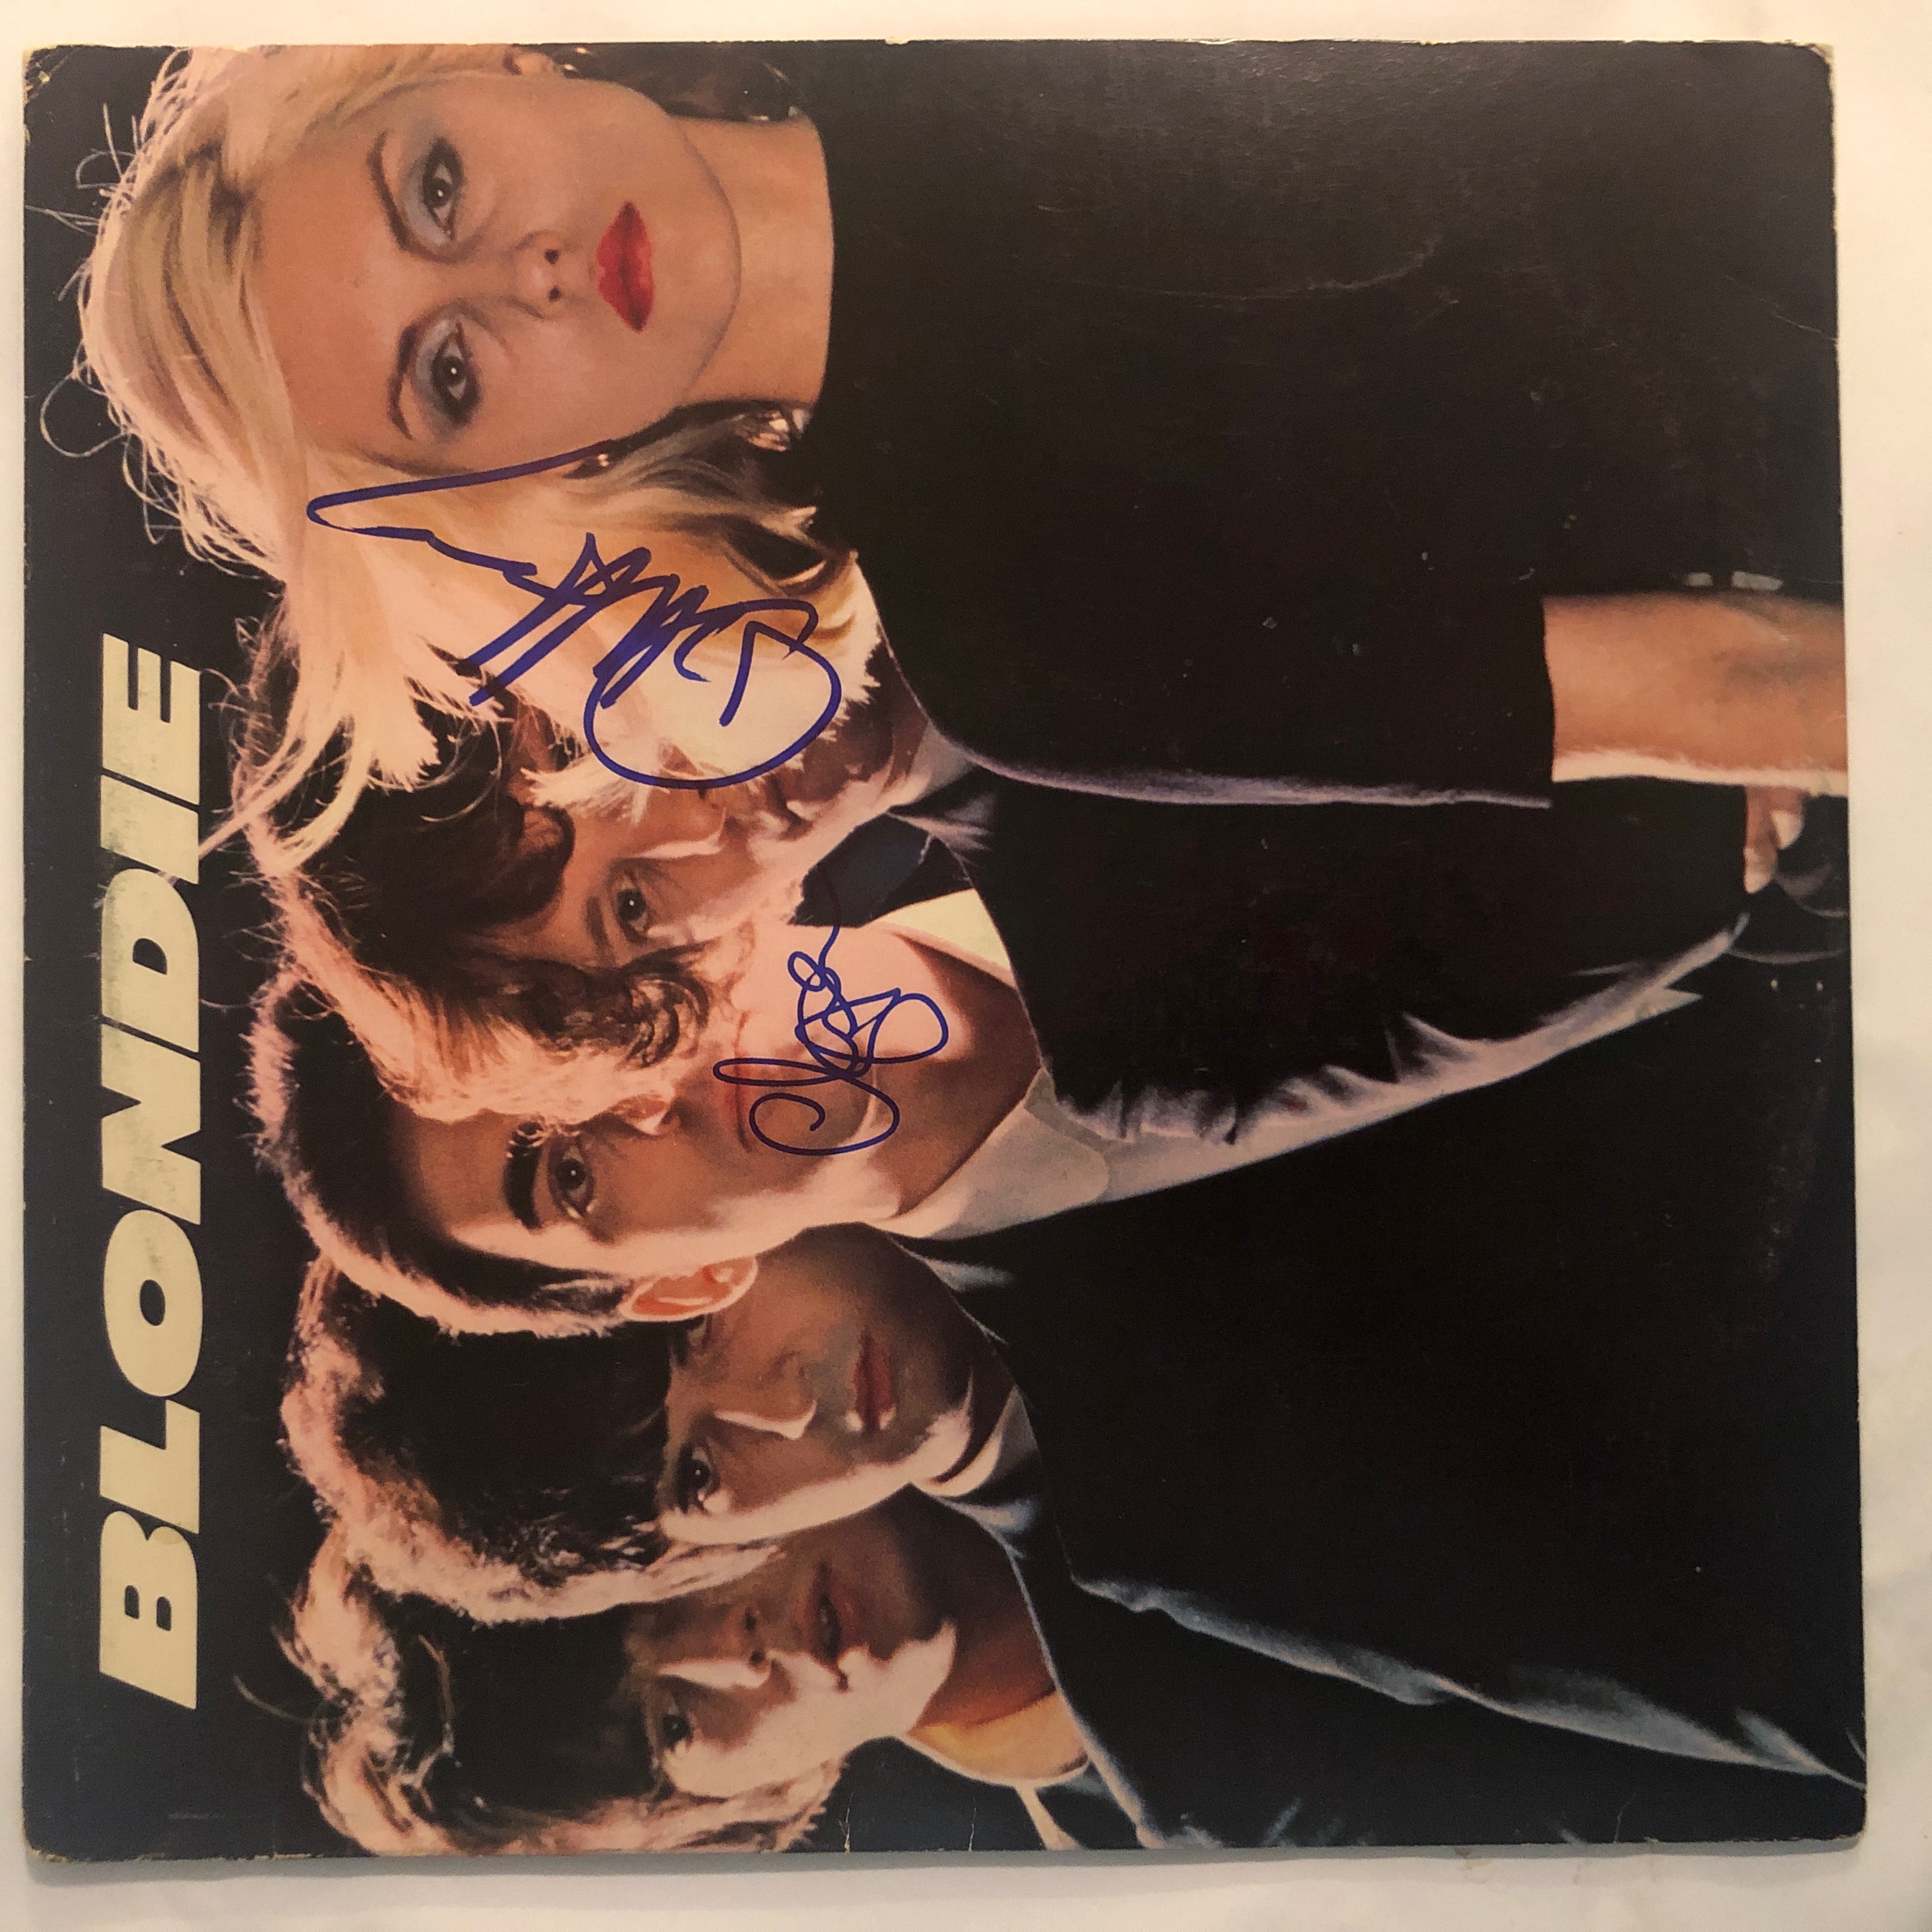 Blonde группа. Группа blondie. Blondie 1976. Группа blondie альбомы. Обложки музыкальных групп.